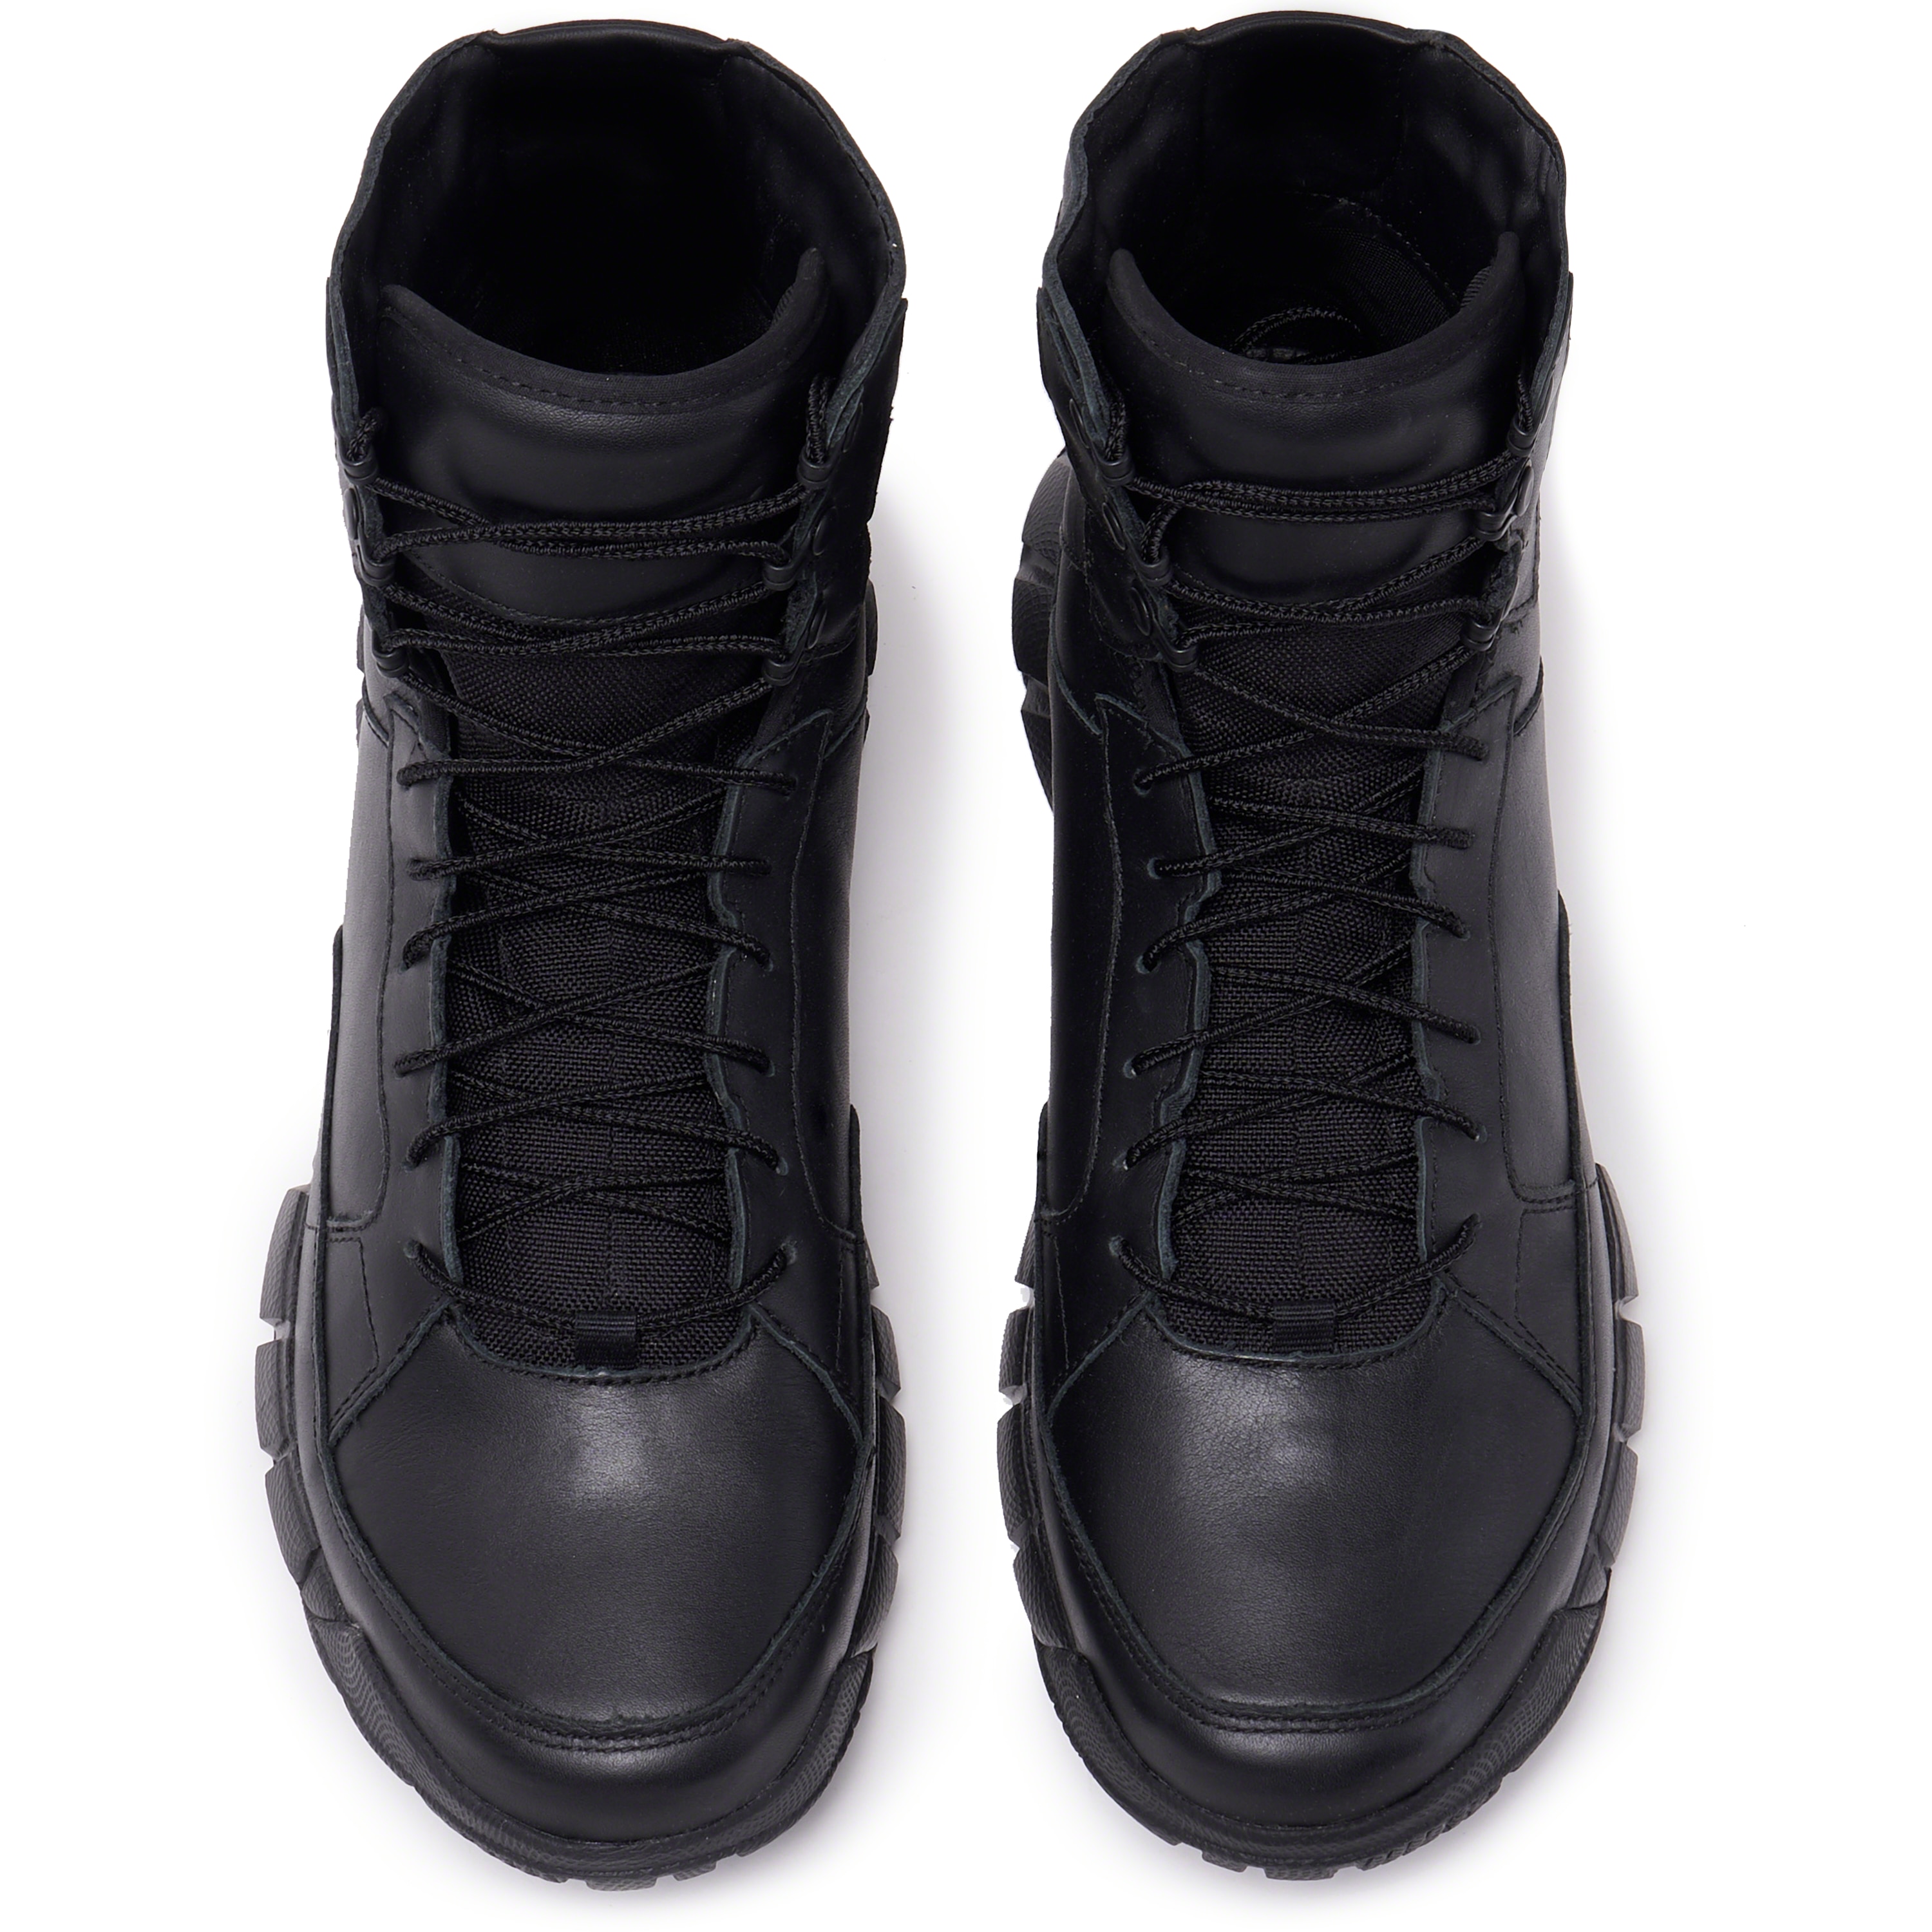 oakley assault boots black